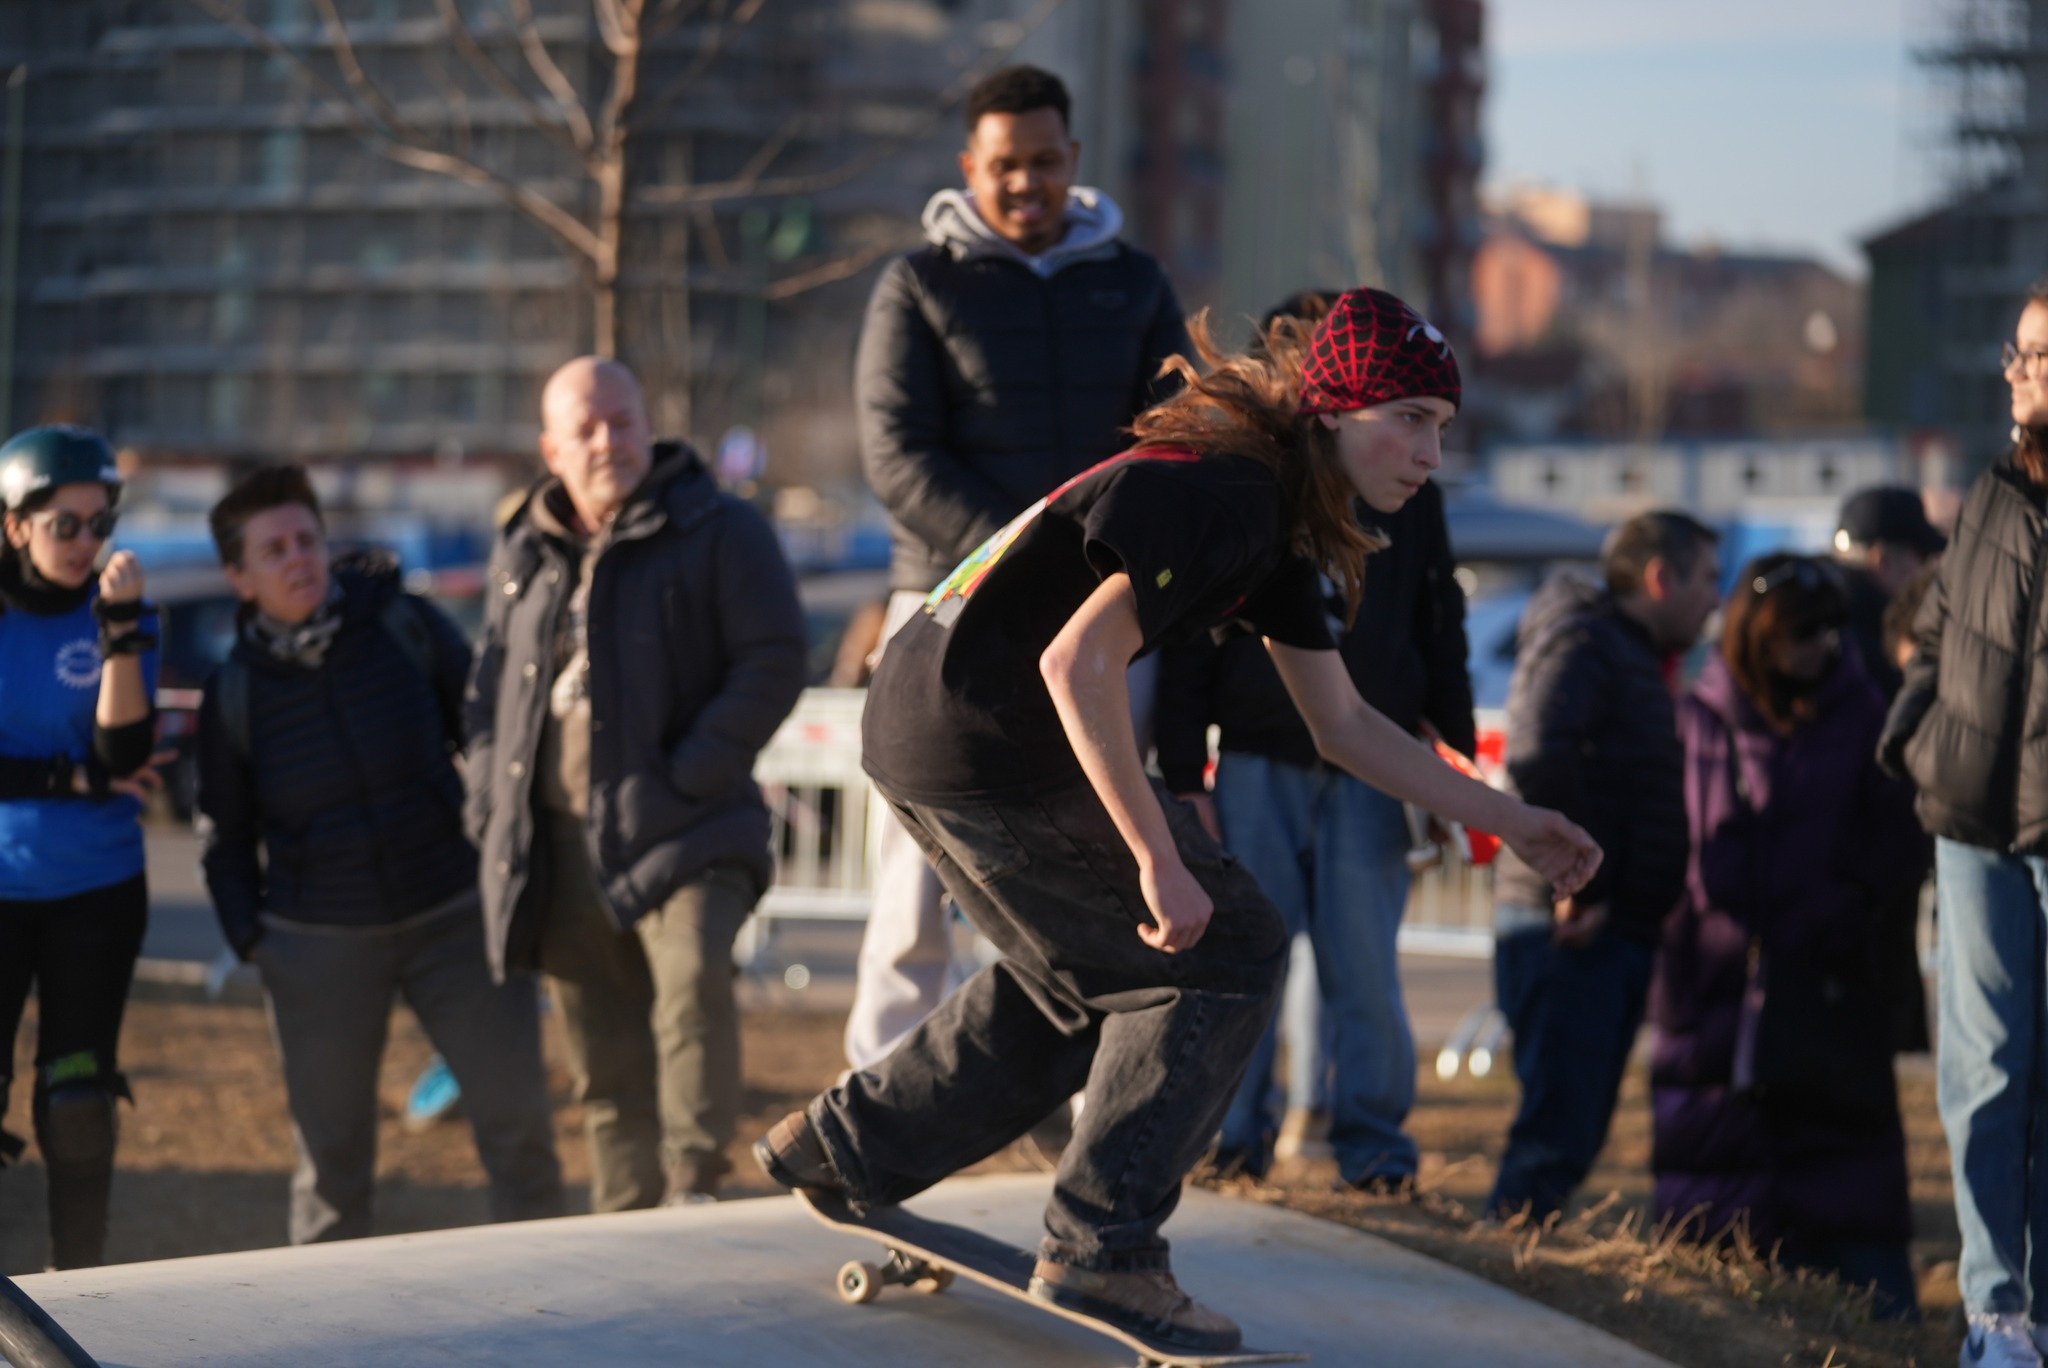 Inaugurazione skatepark: ragazza sullo skate